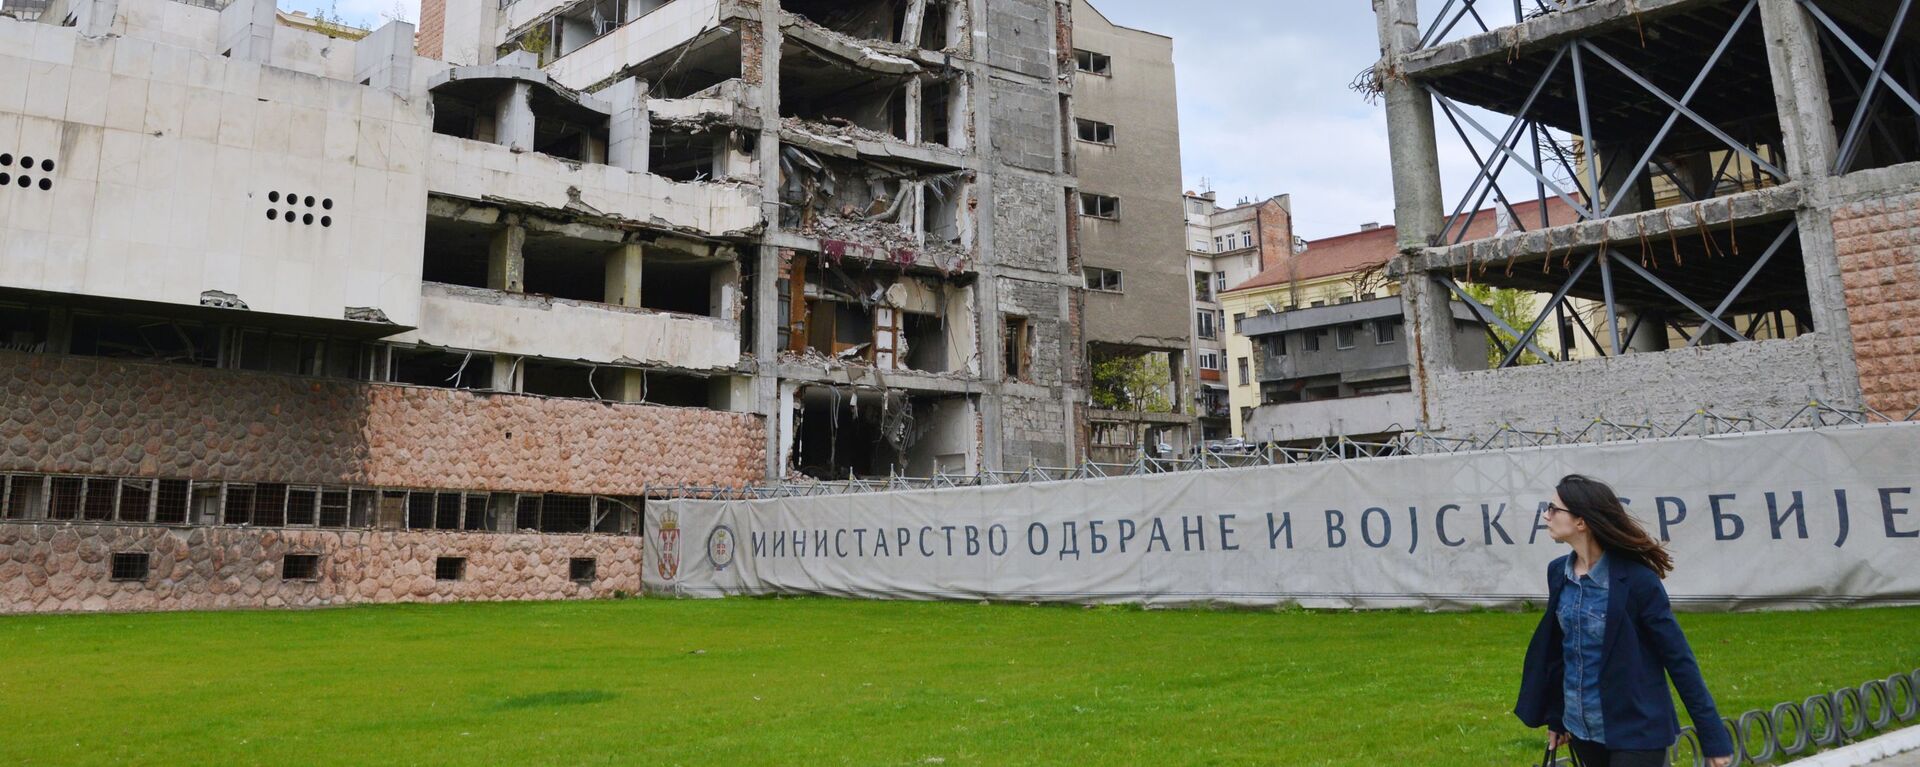 Antigo edifício do Ministério da Defesa, em Belgrado, destruído após o bombardeio da OTAN em 1999 - Sputnik Brasil, 1920, 25.03.2020